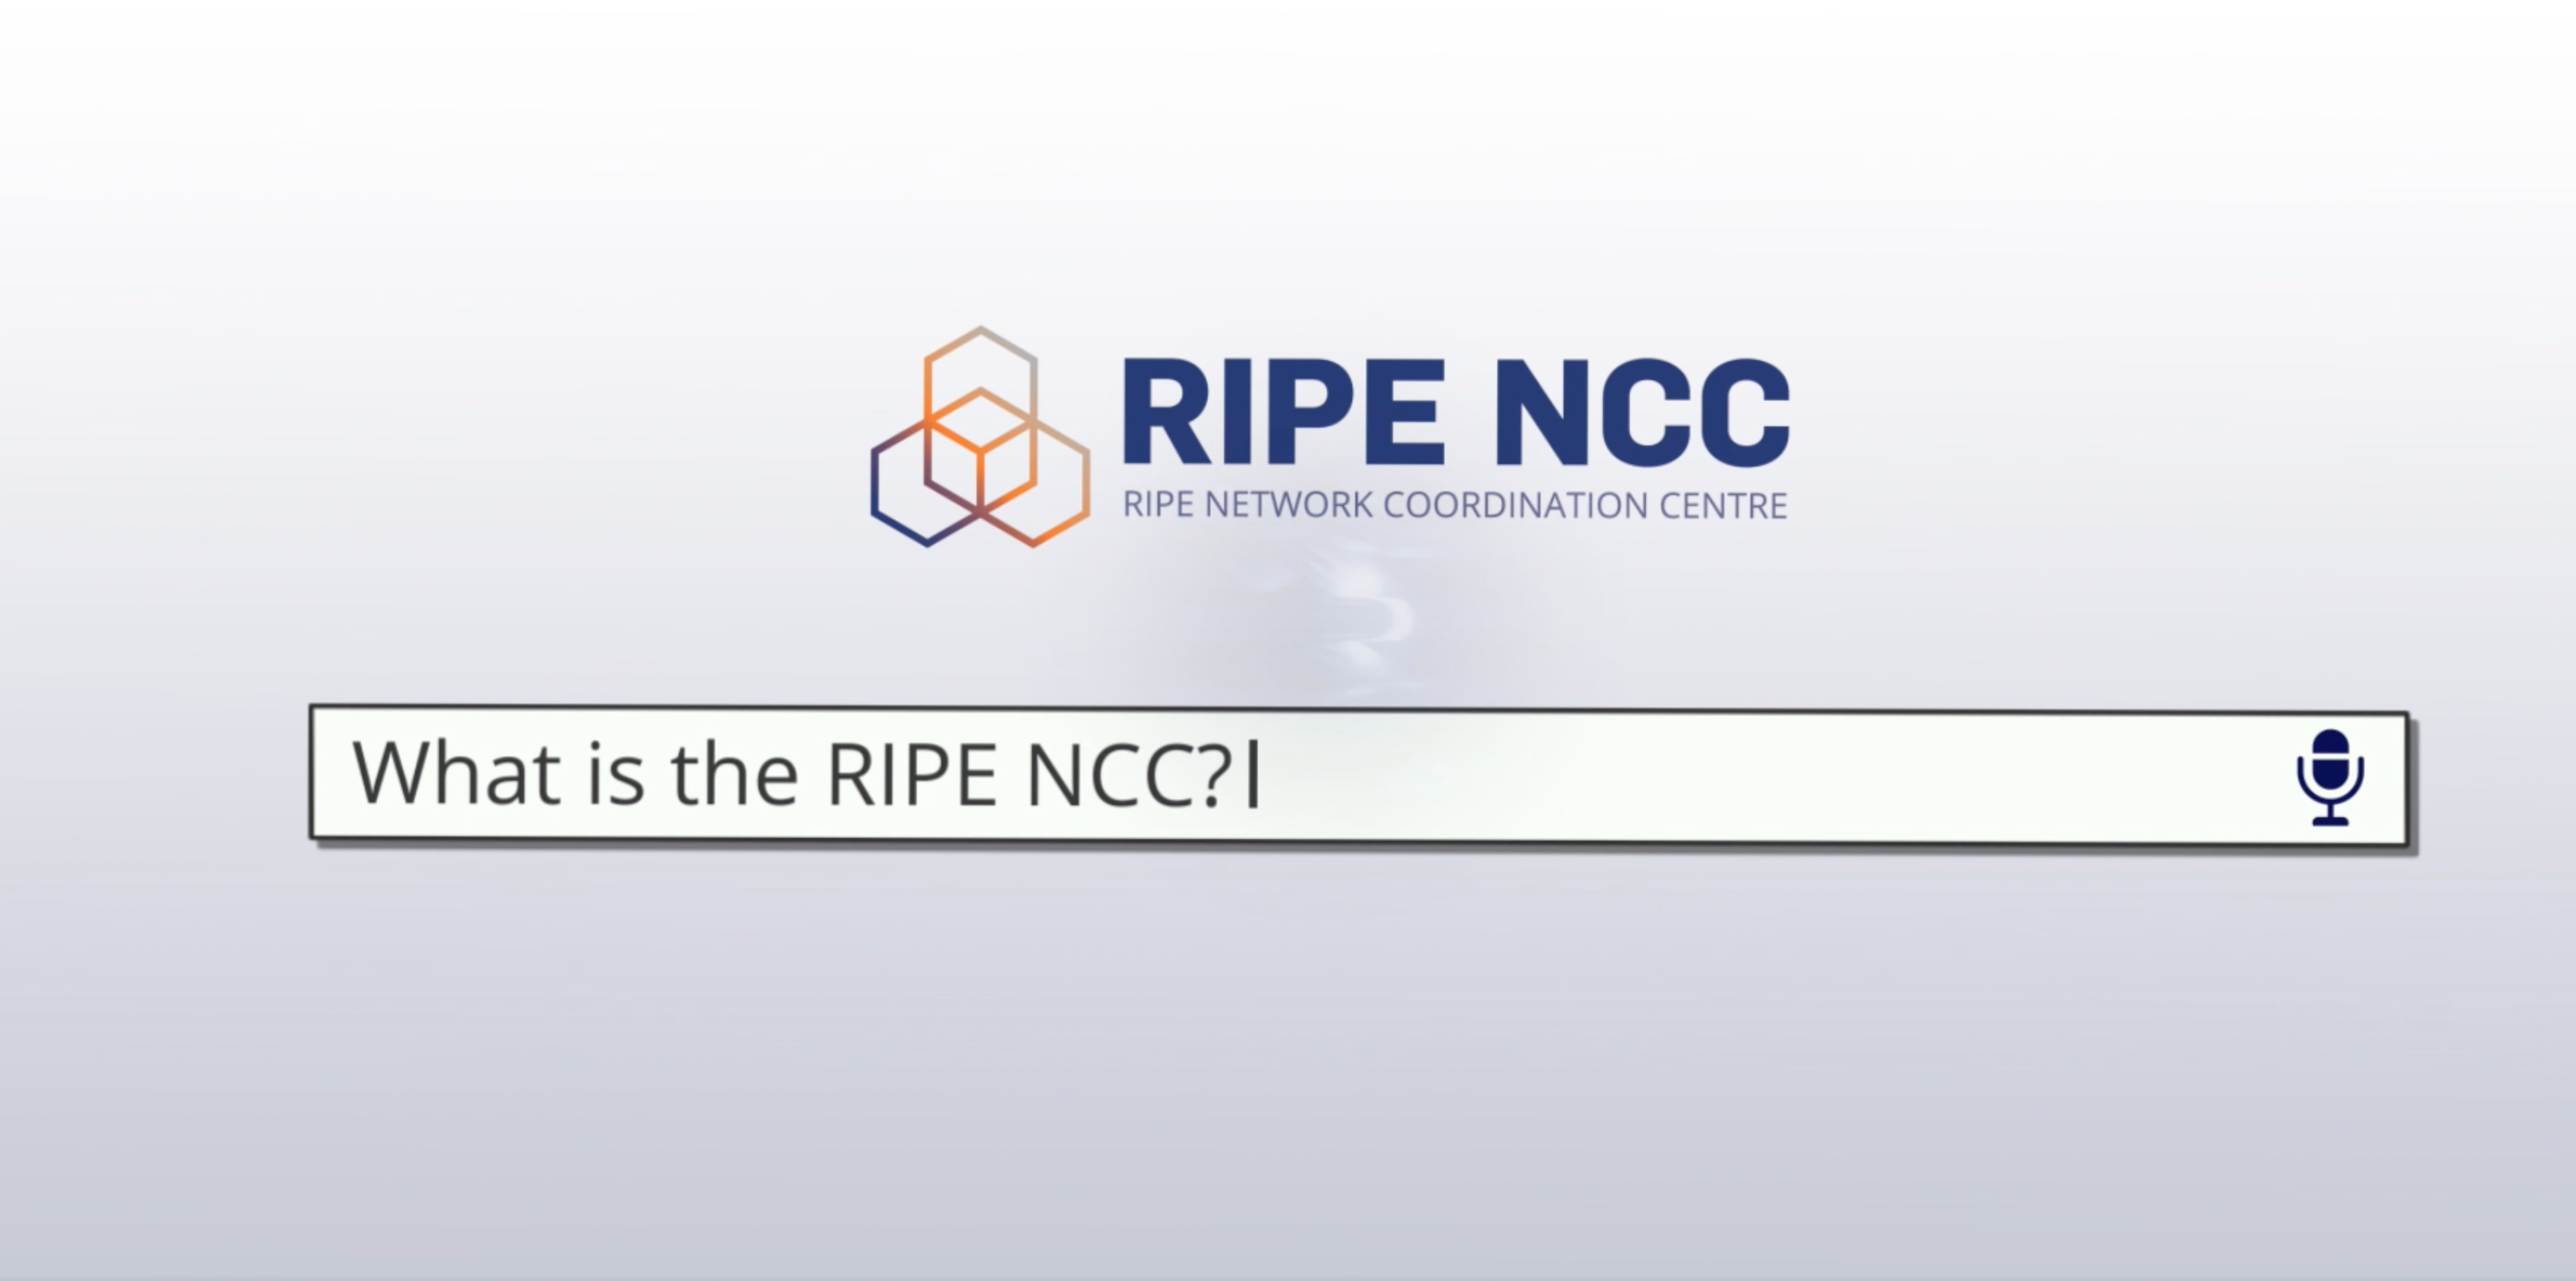 ripe ncc, private layer